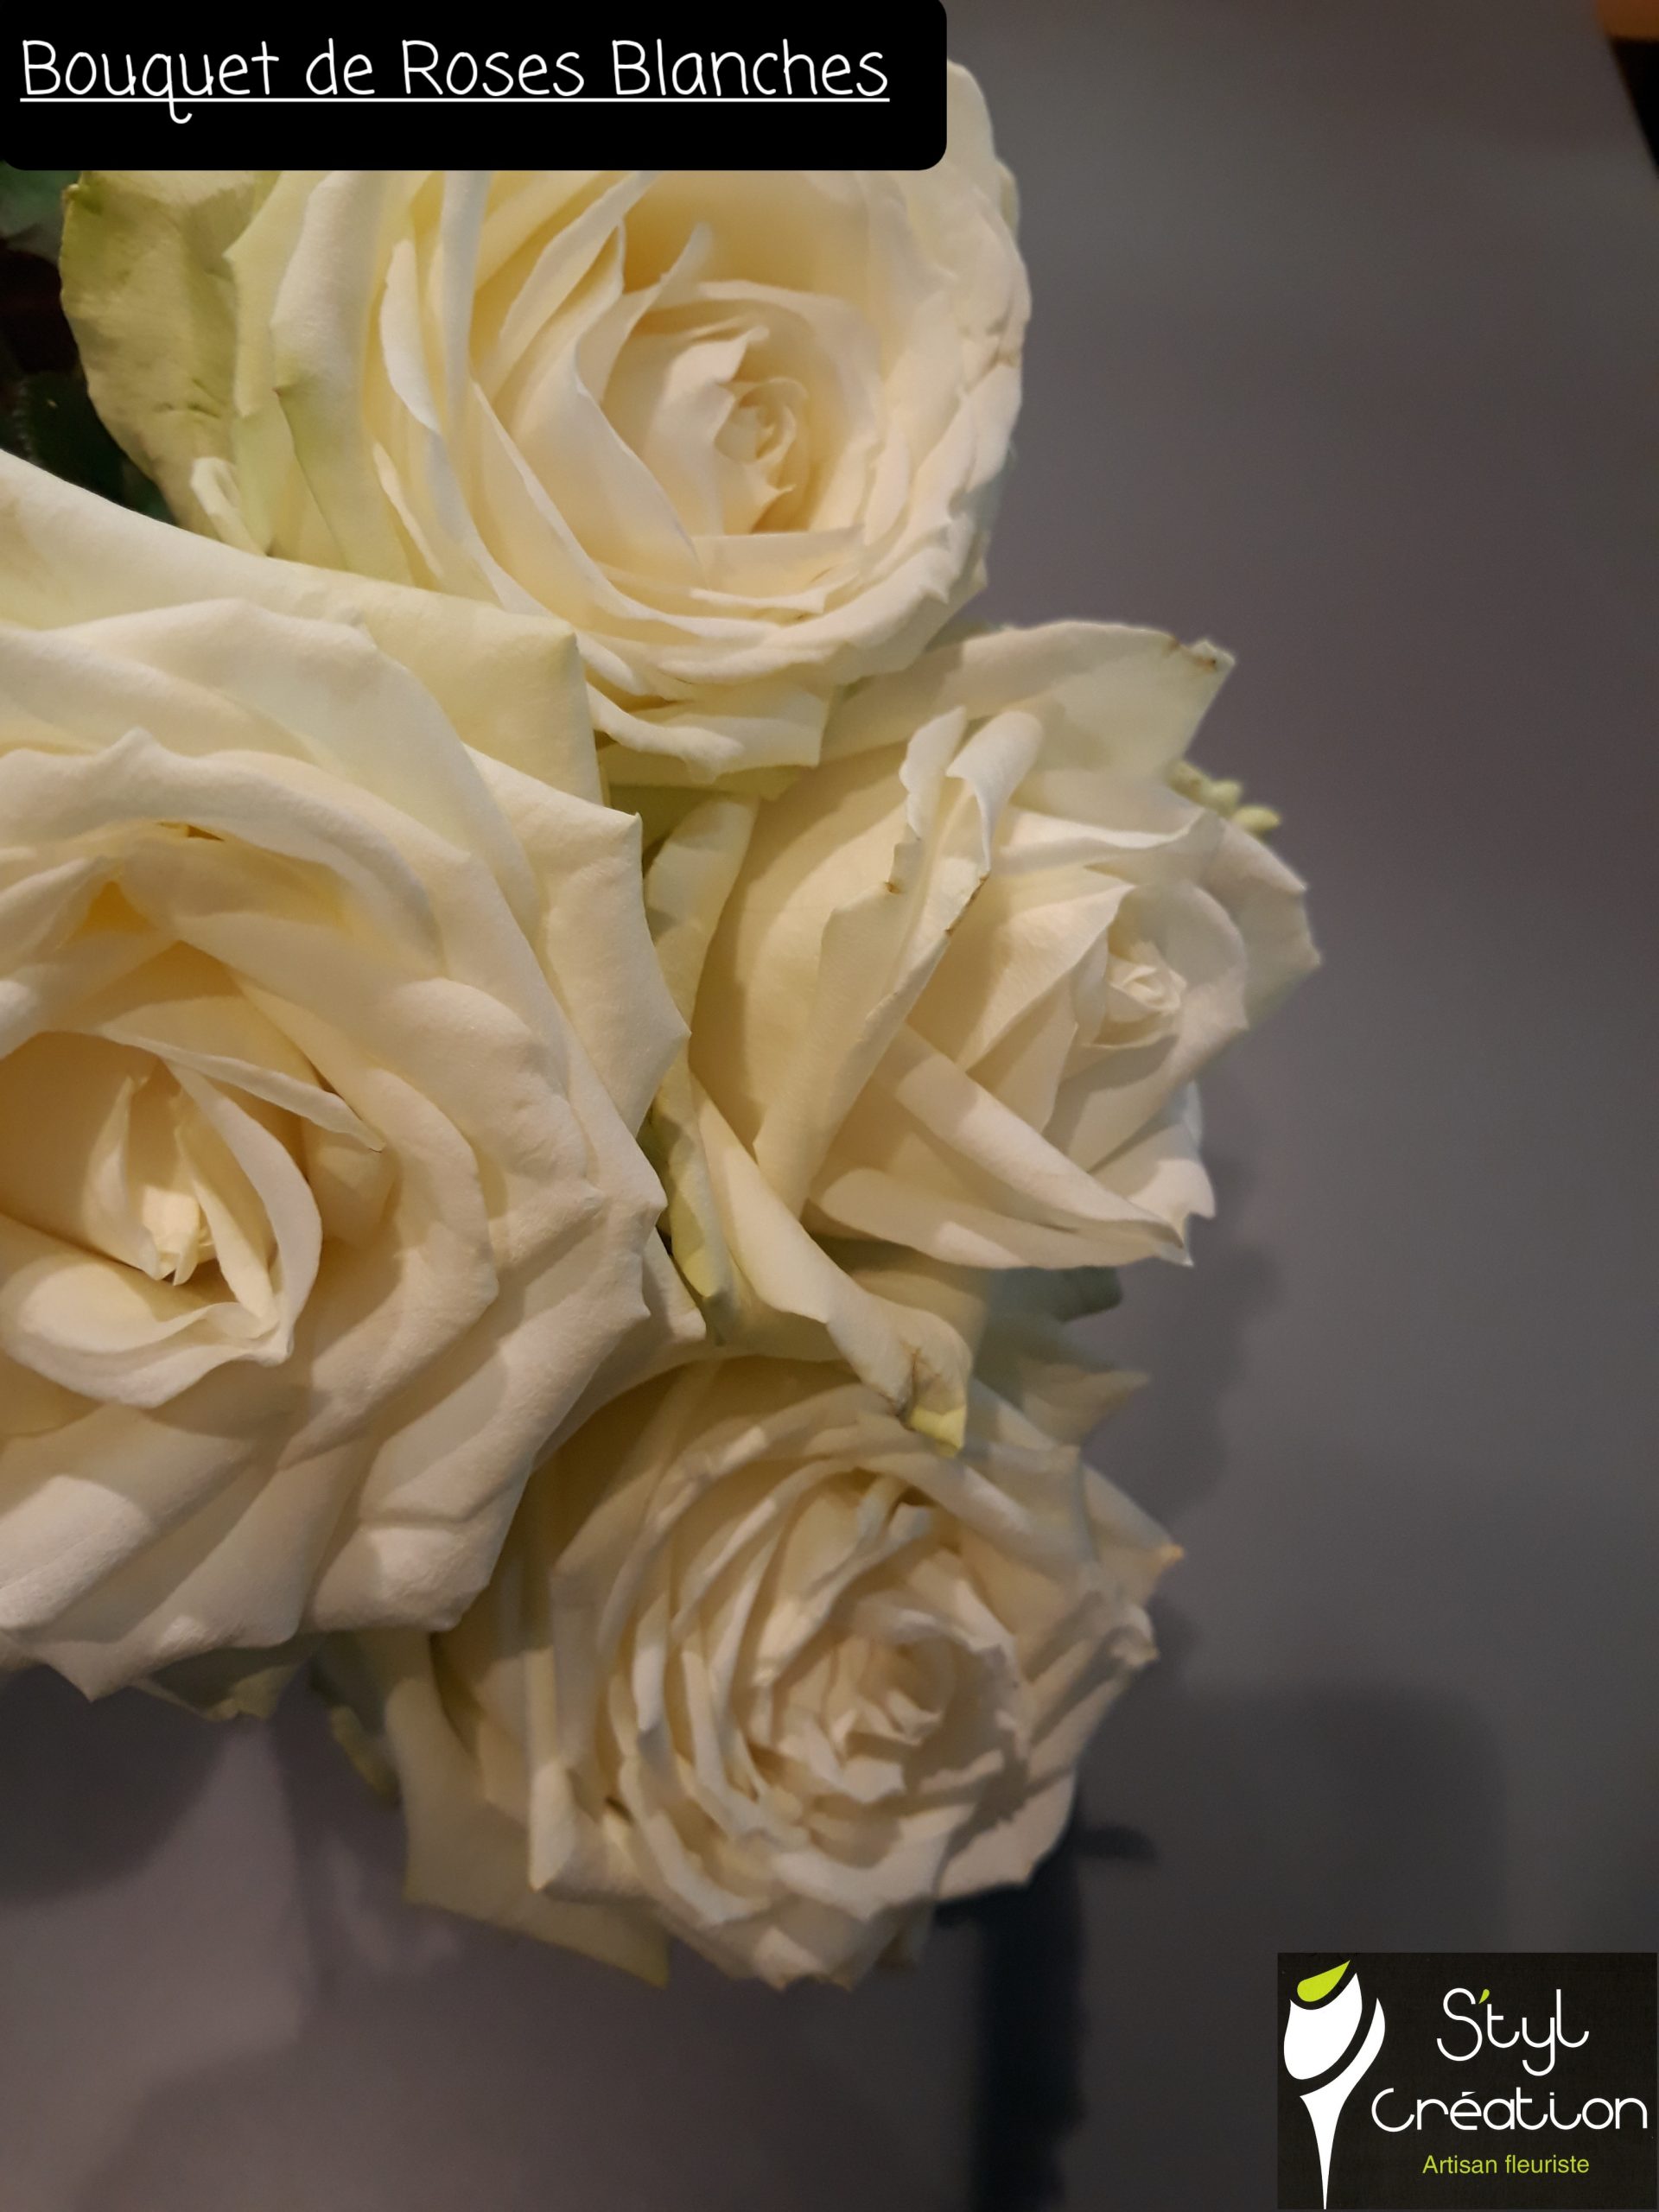 Bouquet de Roses Blanches – S'tyl Création Artisan Fleuriste